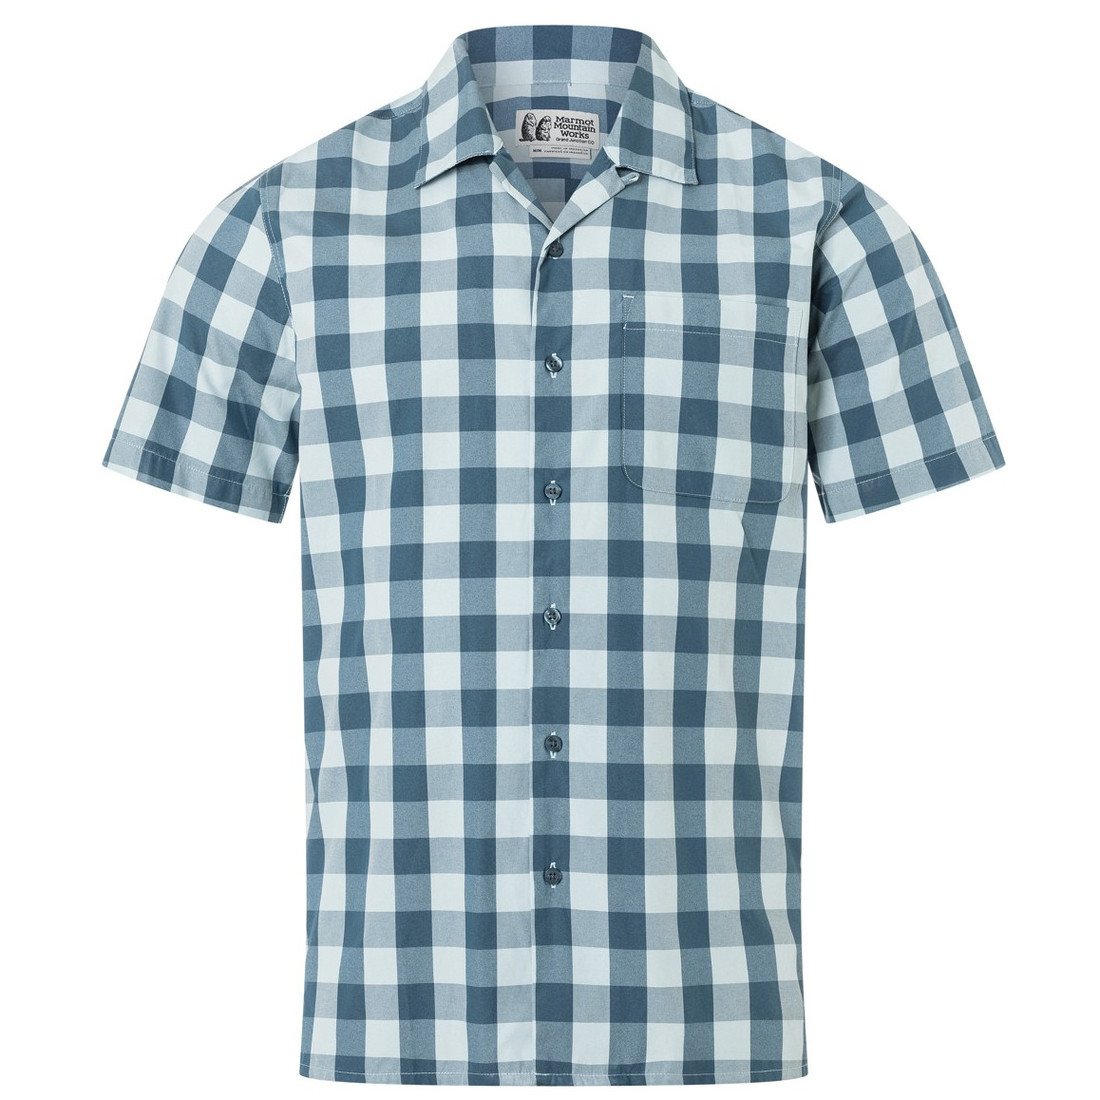 Pánská košile Marmot Muir Camp Novelty SS Velikost: M / Barva: modrá/bíla